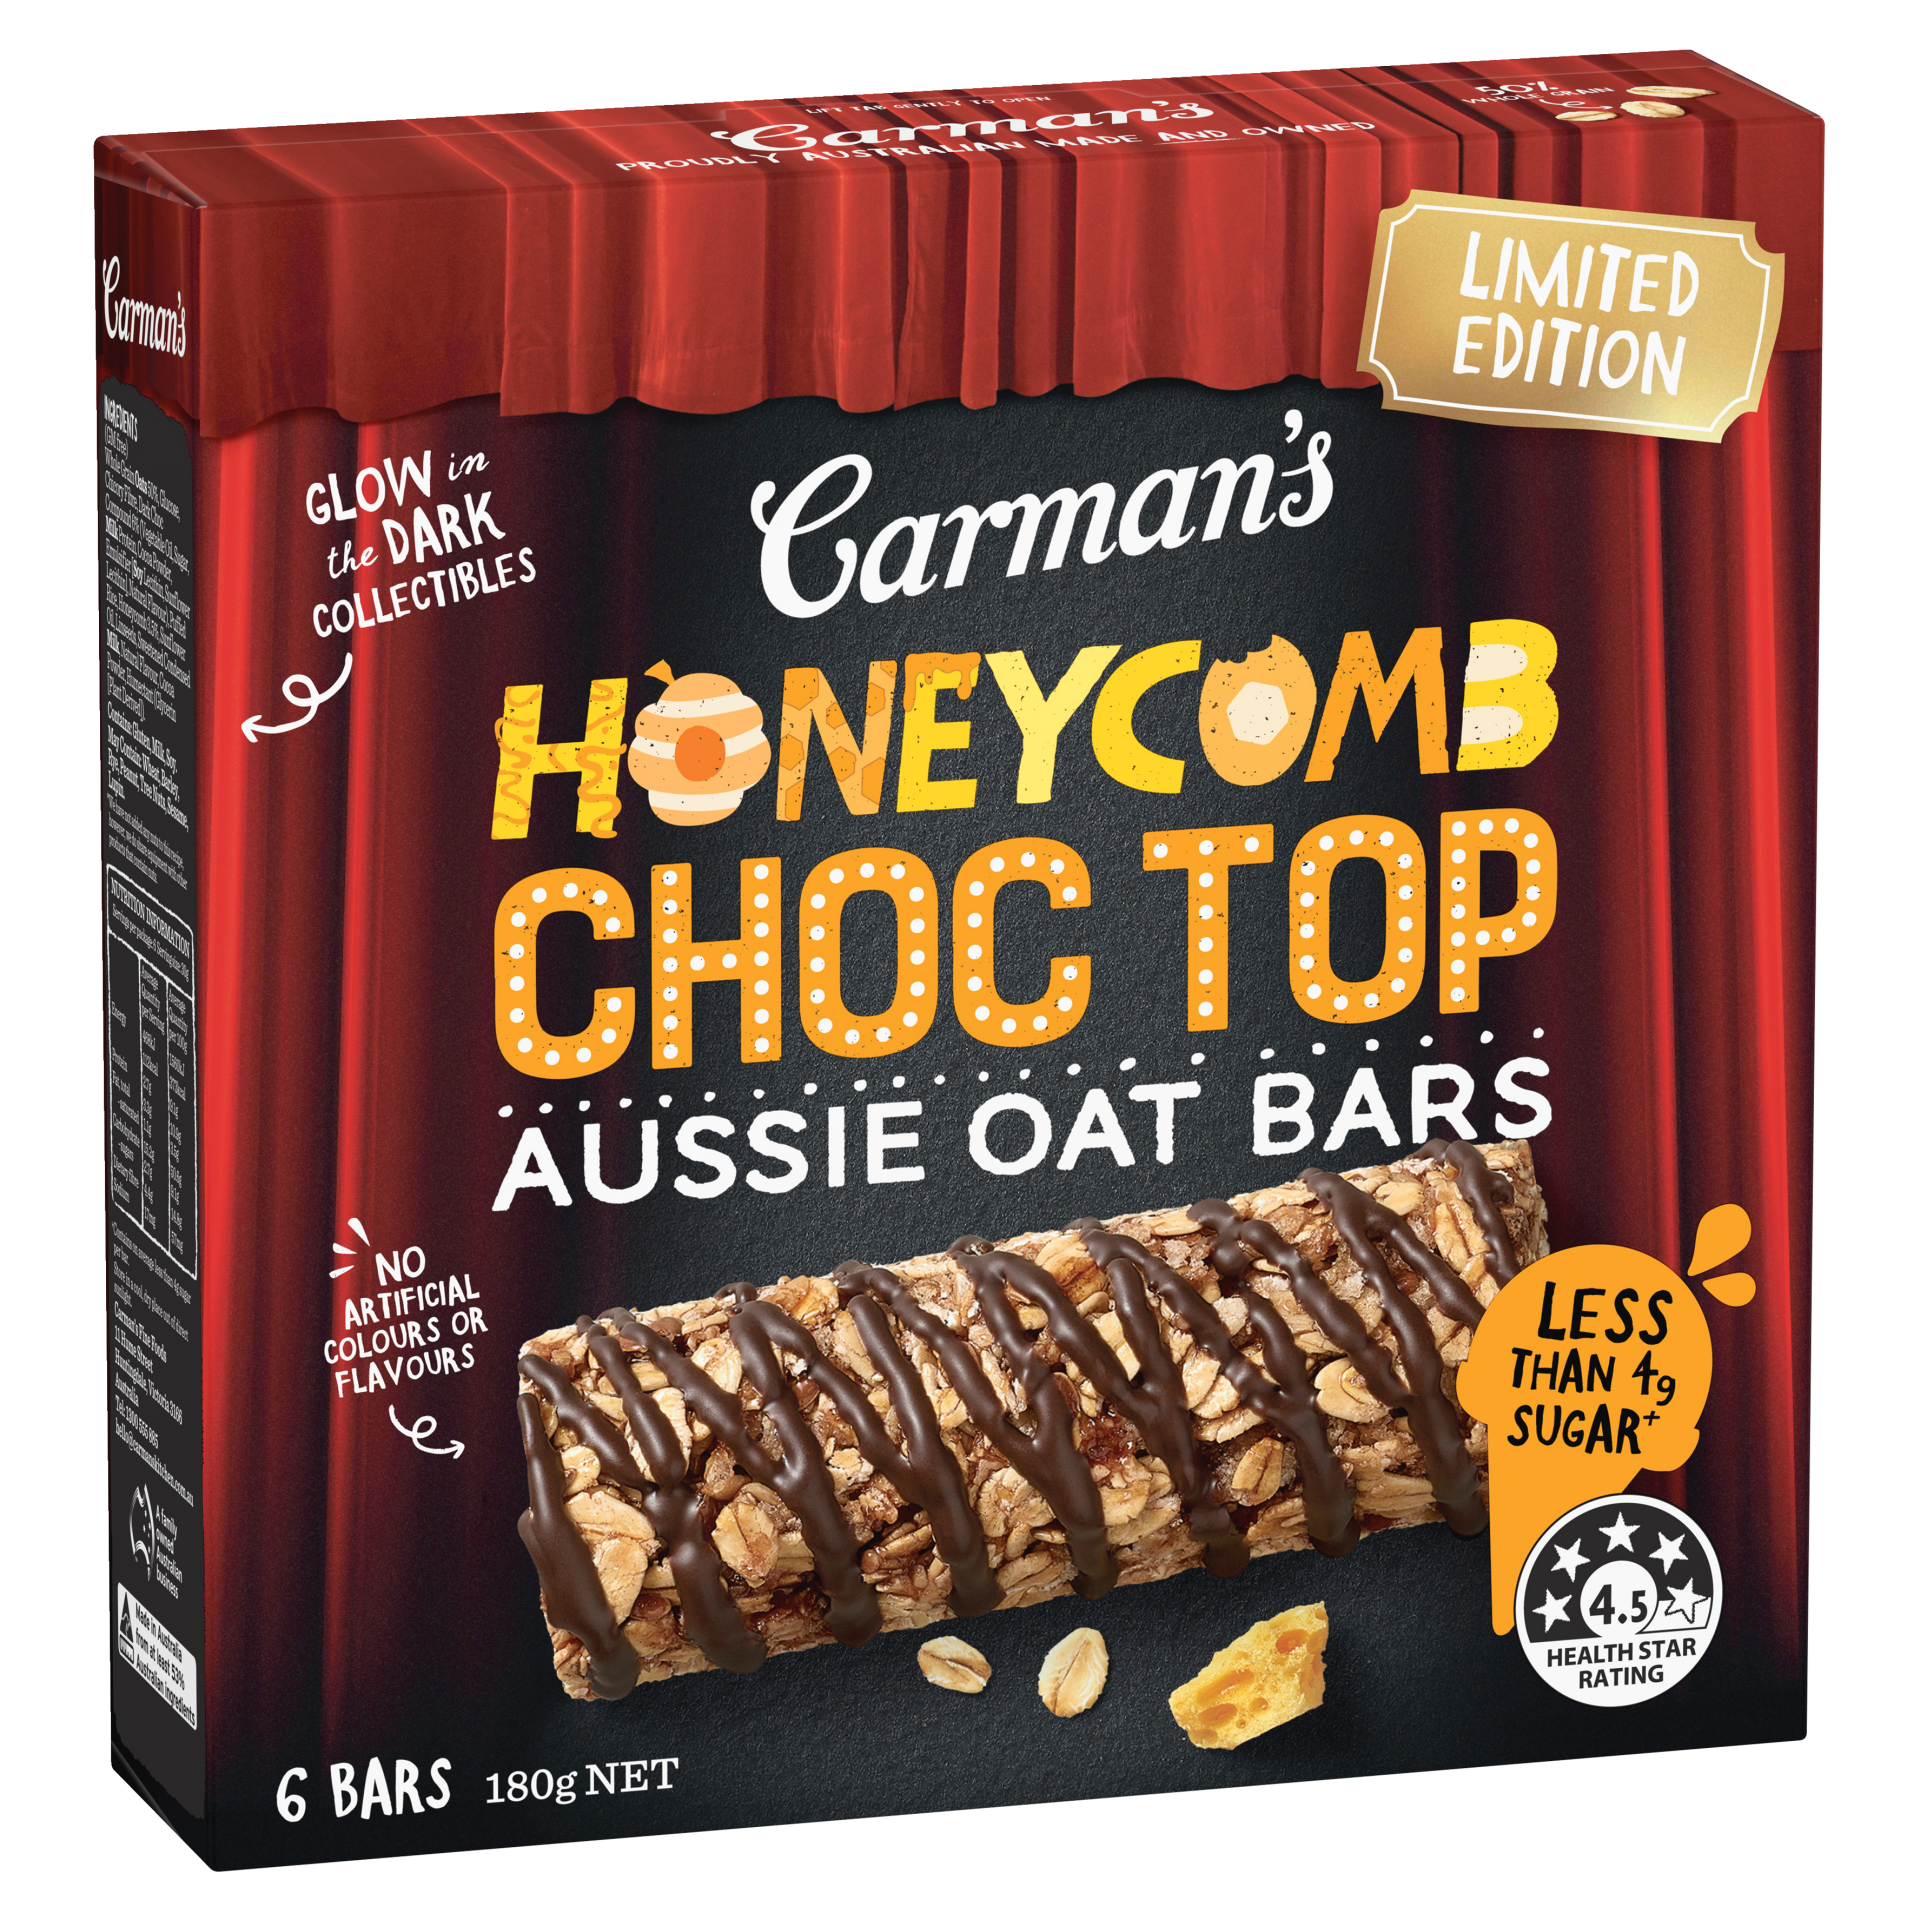 Aussie Oat Bars Honeycomb Choc Top